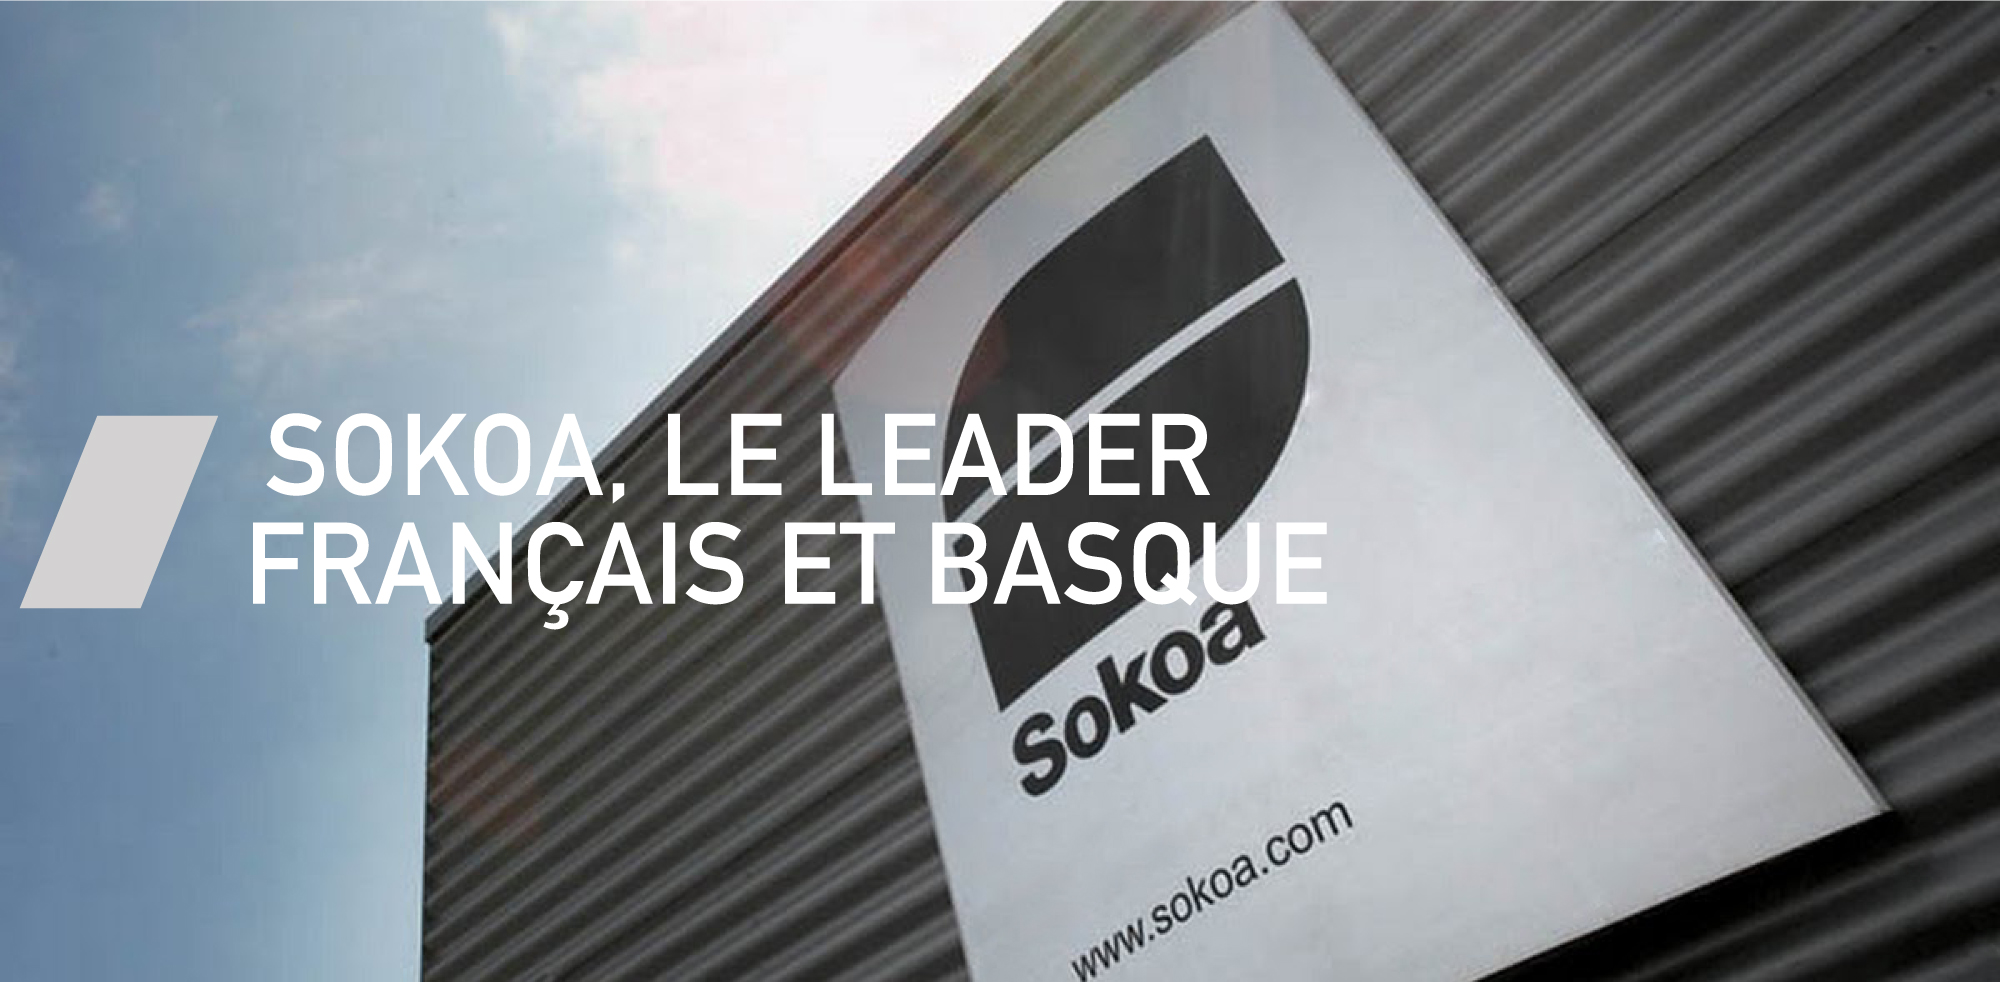 SOKOA, fabricant de mobilier français par excellence